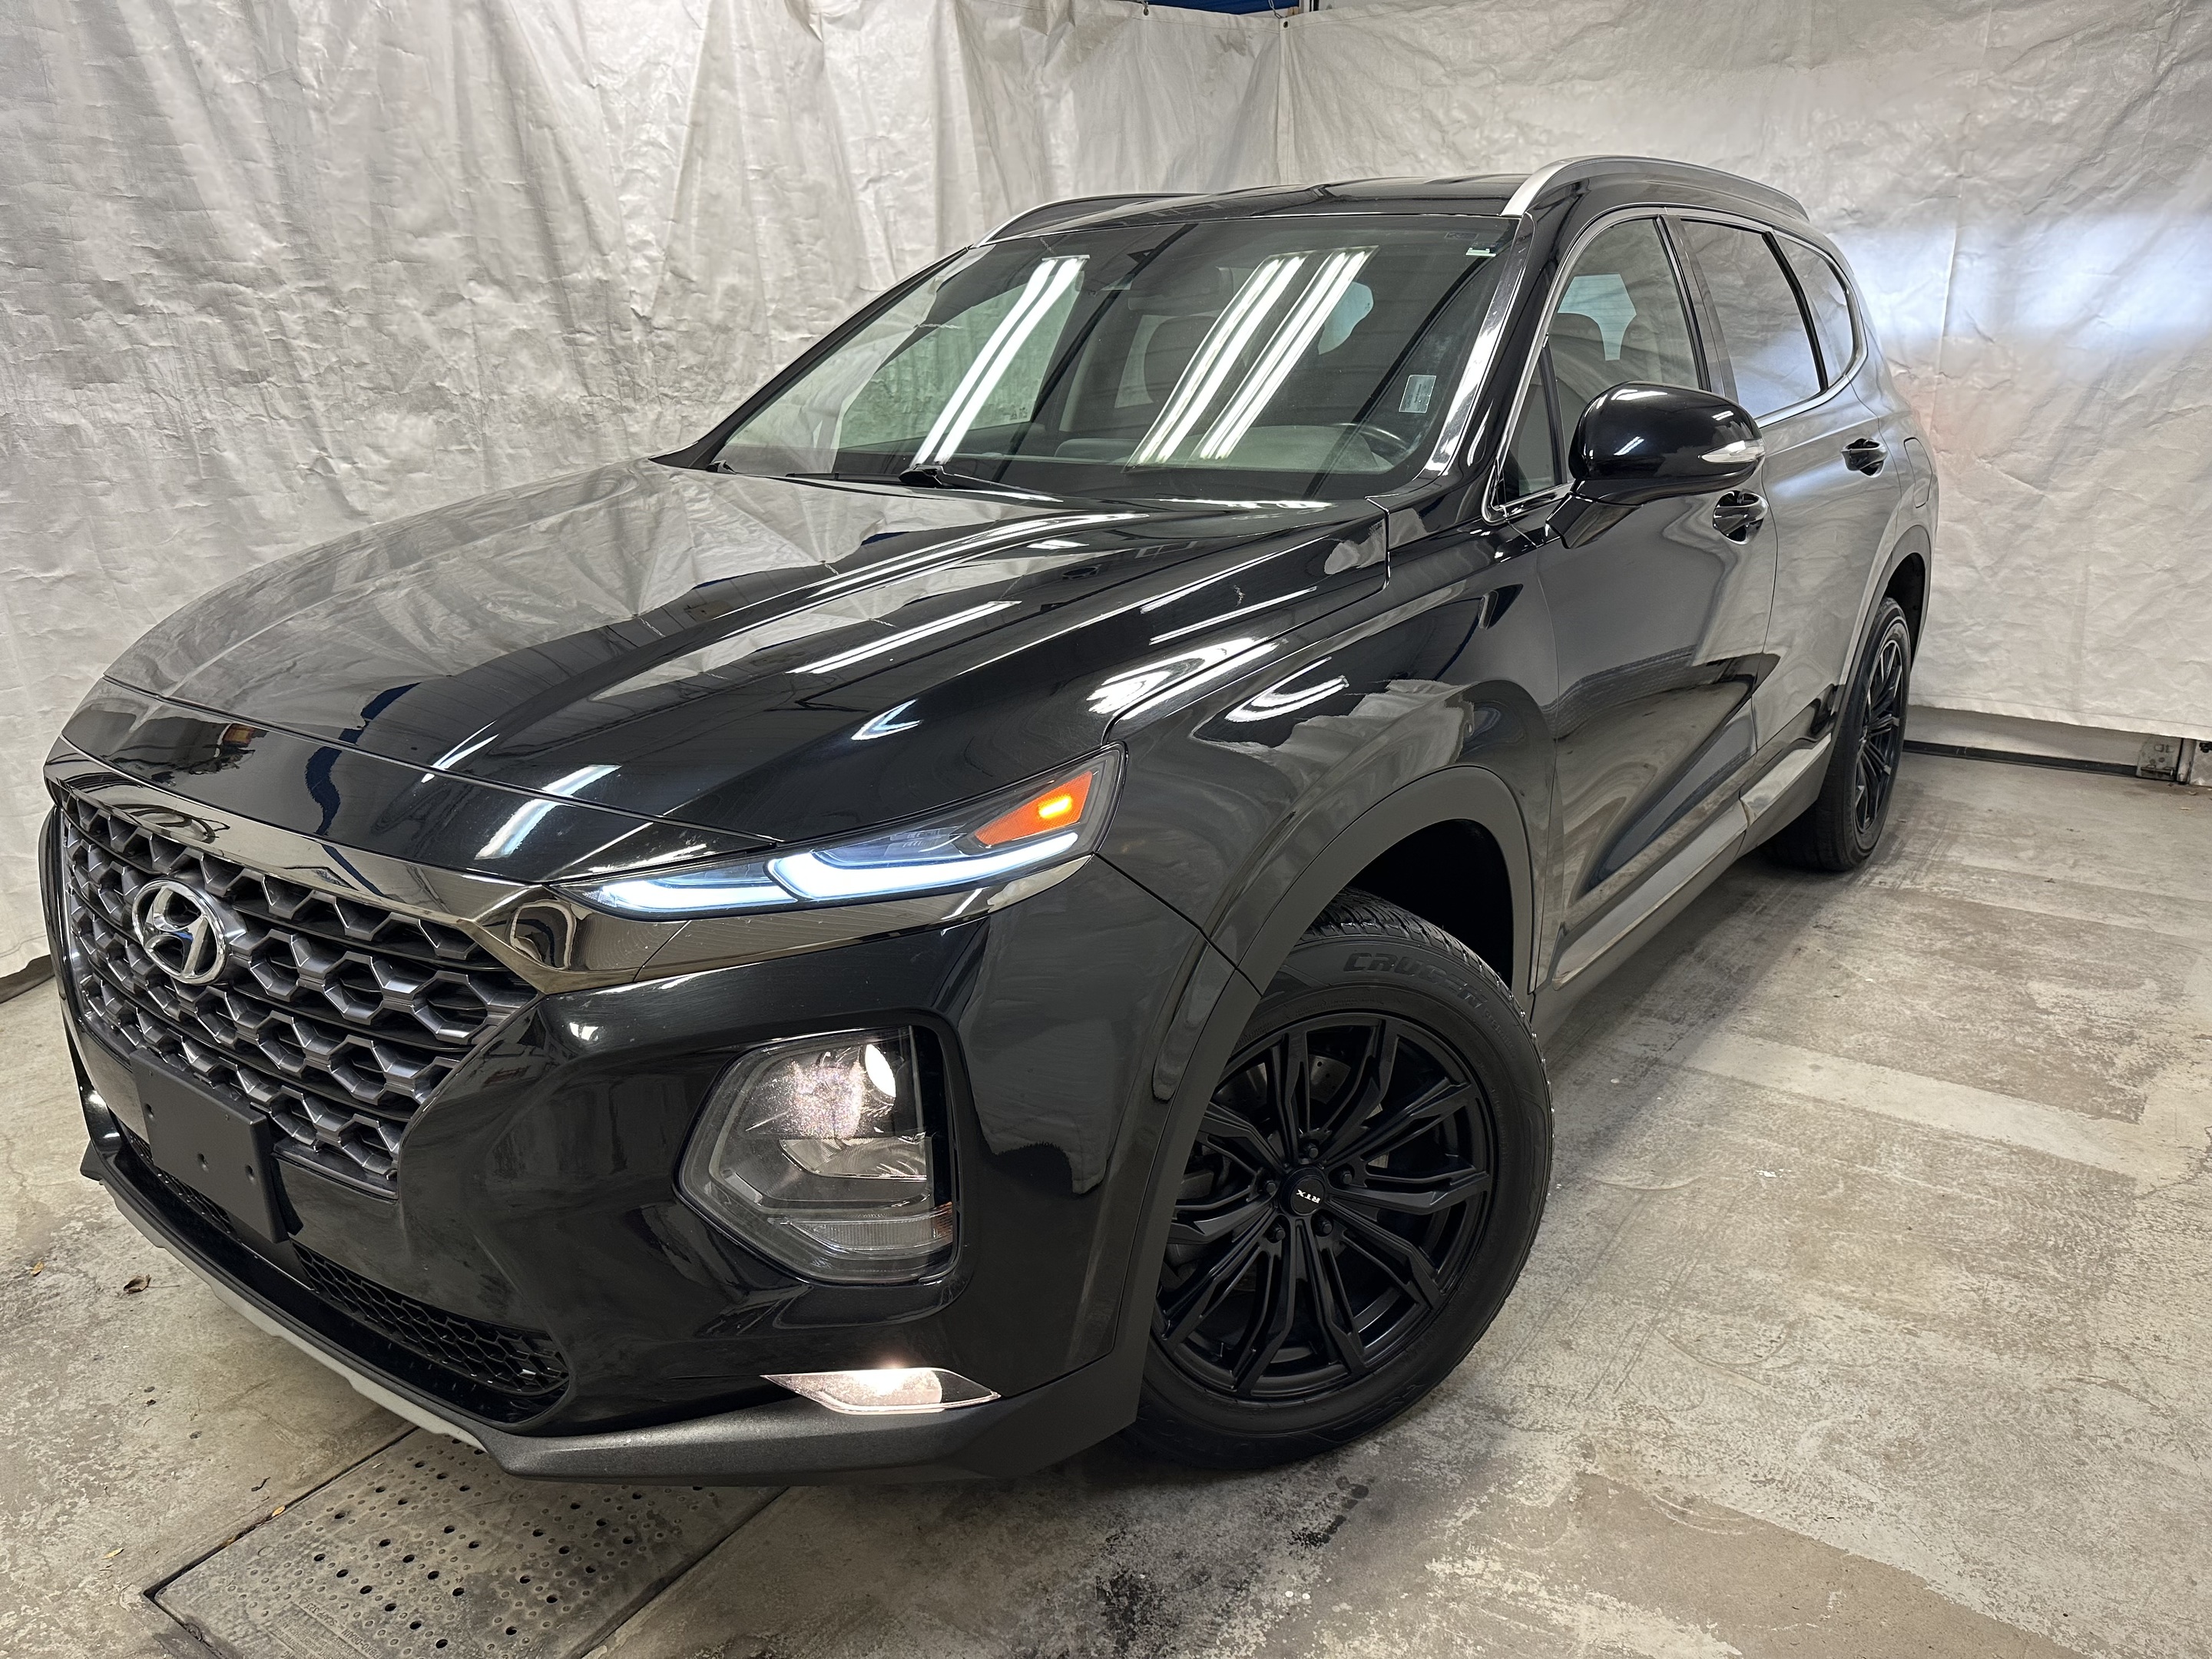 2019 Hyundai Santa Fe AWD w-Dark Chrome Accent (Huntingdon)